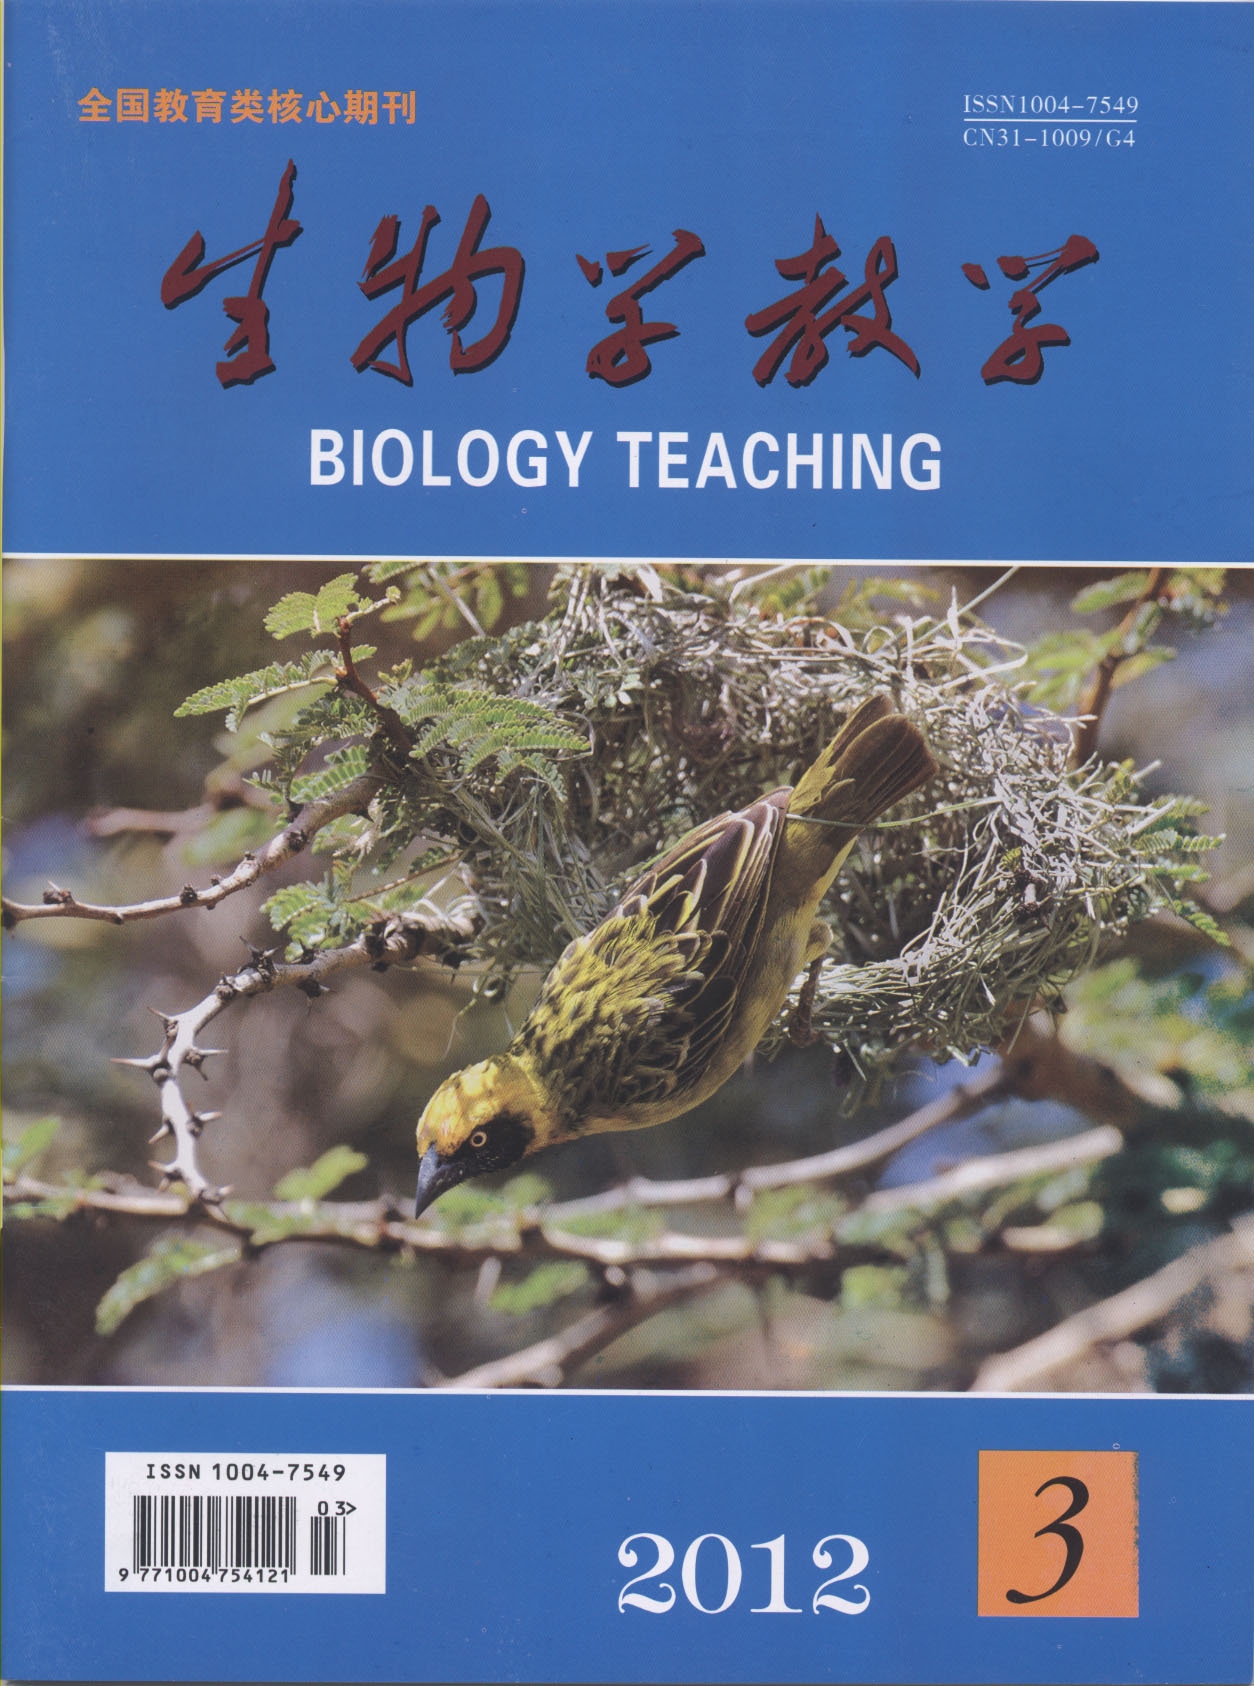 生物學教學雜誌新封面